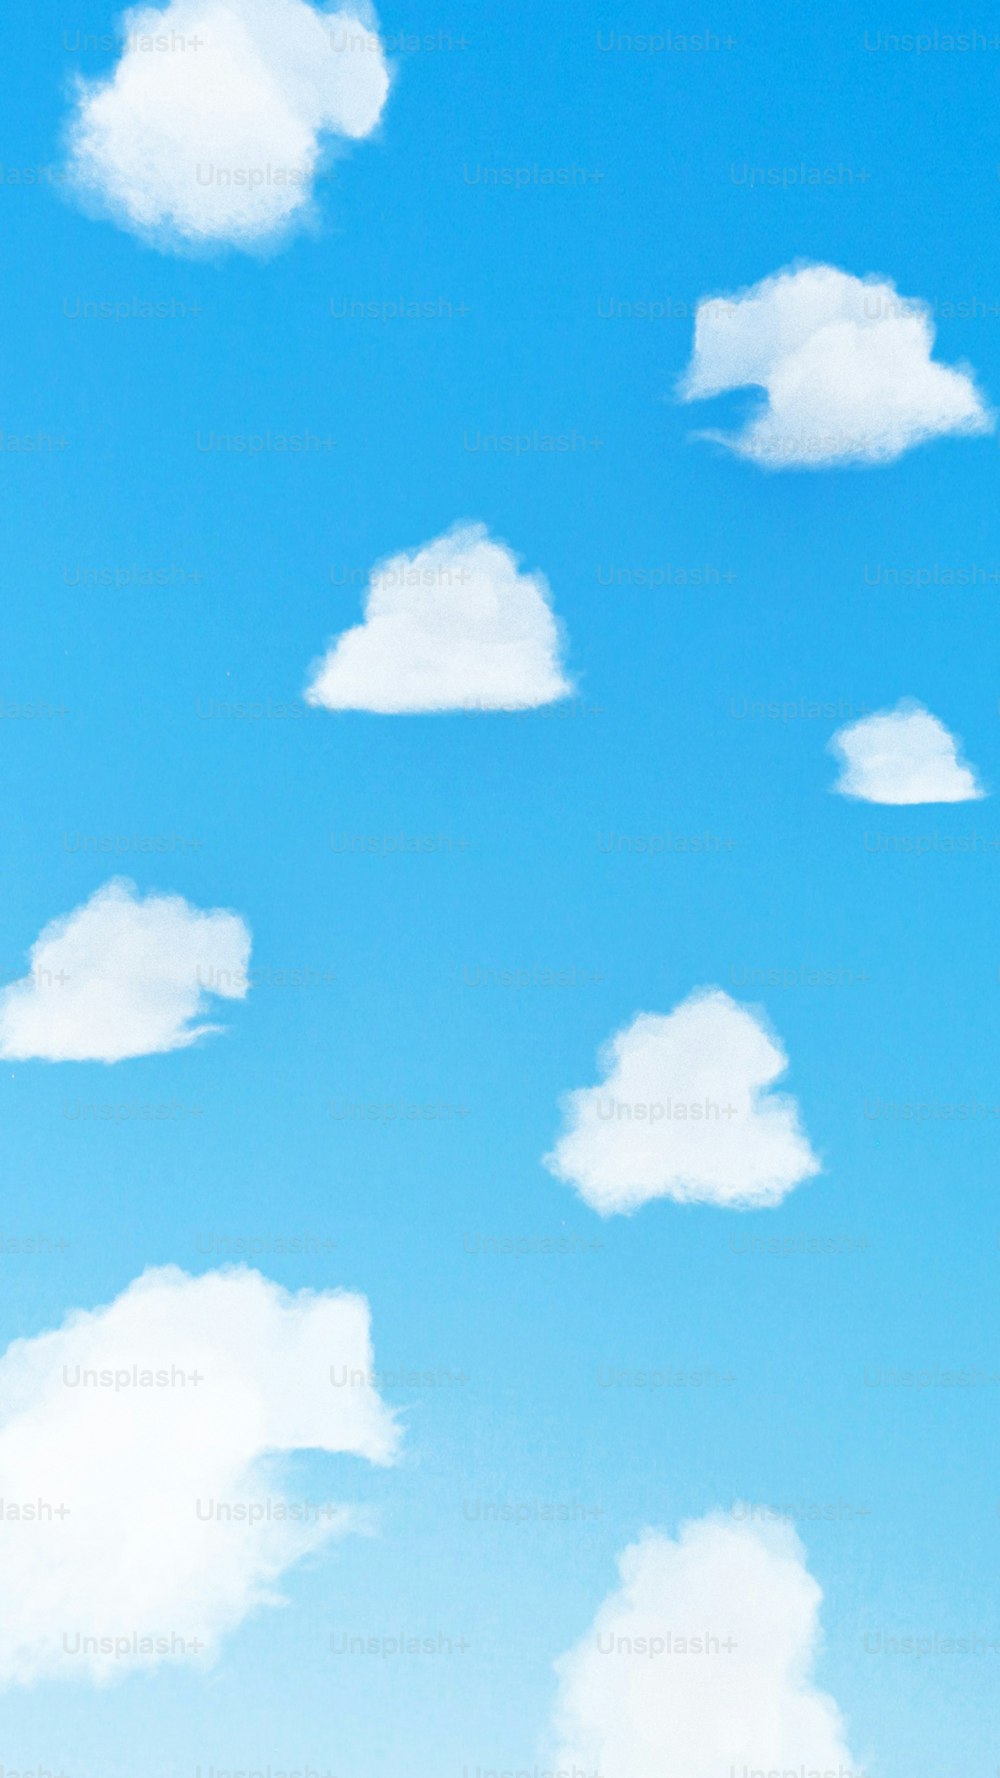 Un groupe de nuages blancs dans un ciel bleu